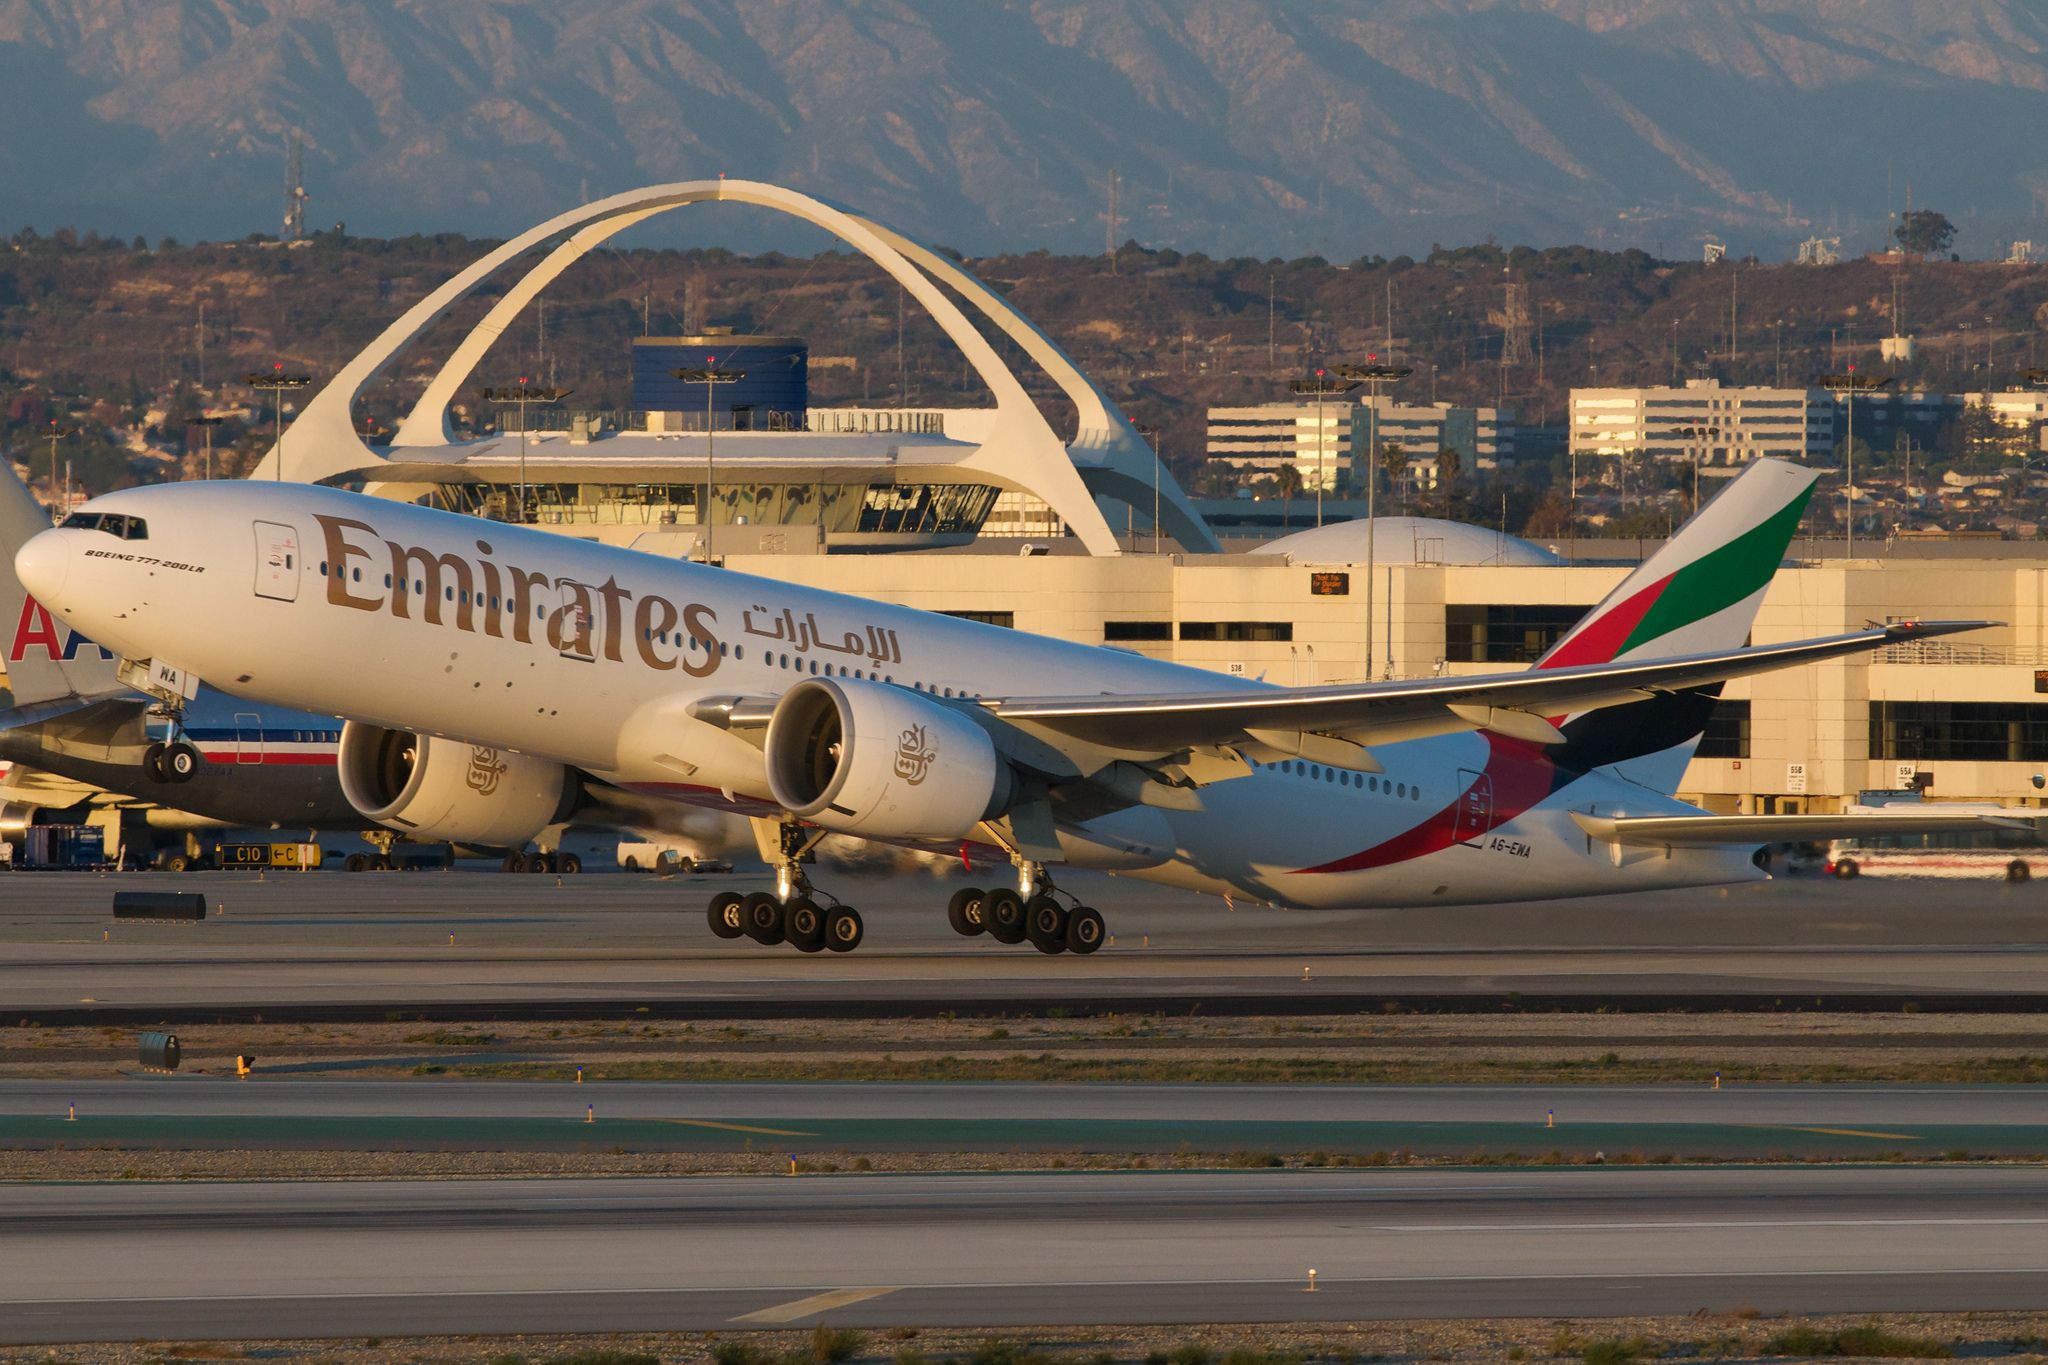 Emirates Boeing 777-200LR A6-EWA par BriYYZ sous (CC BY-SA 2.0) - https://www.flickr.com/photos/bribri/7626707936/